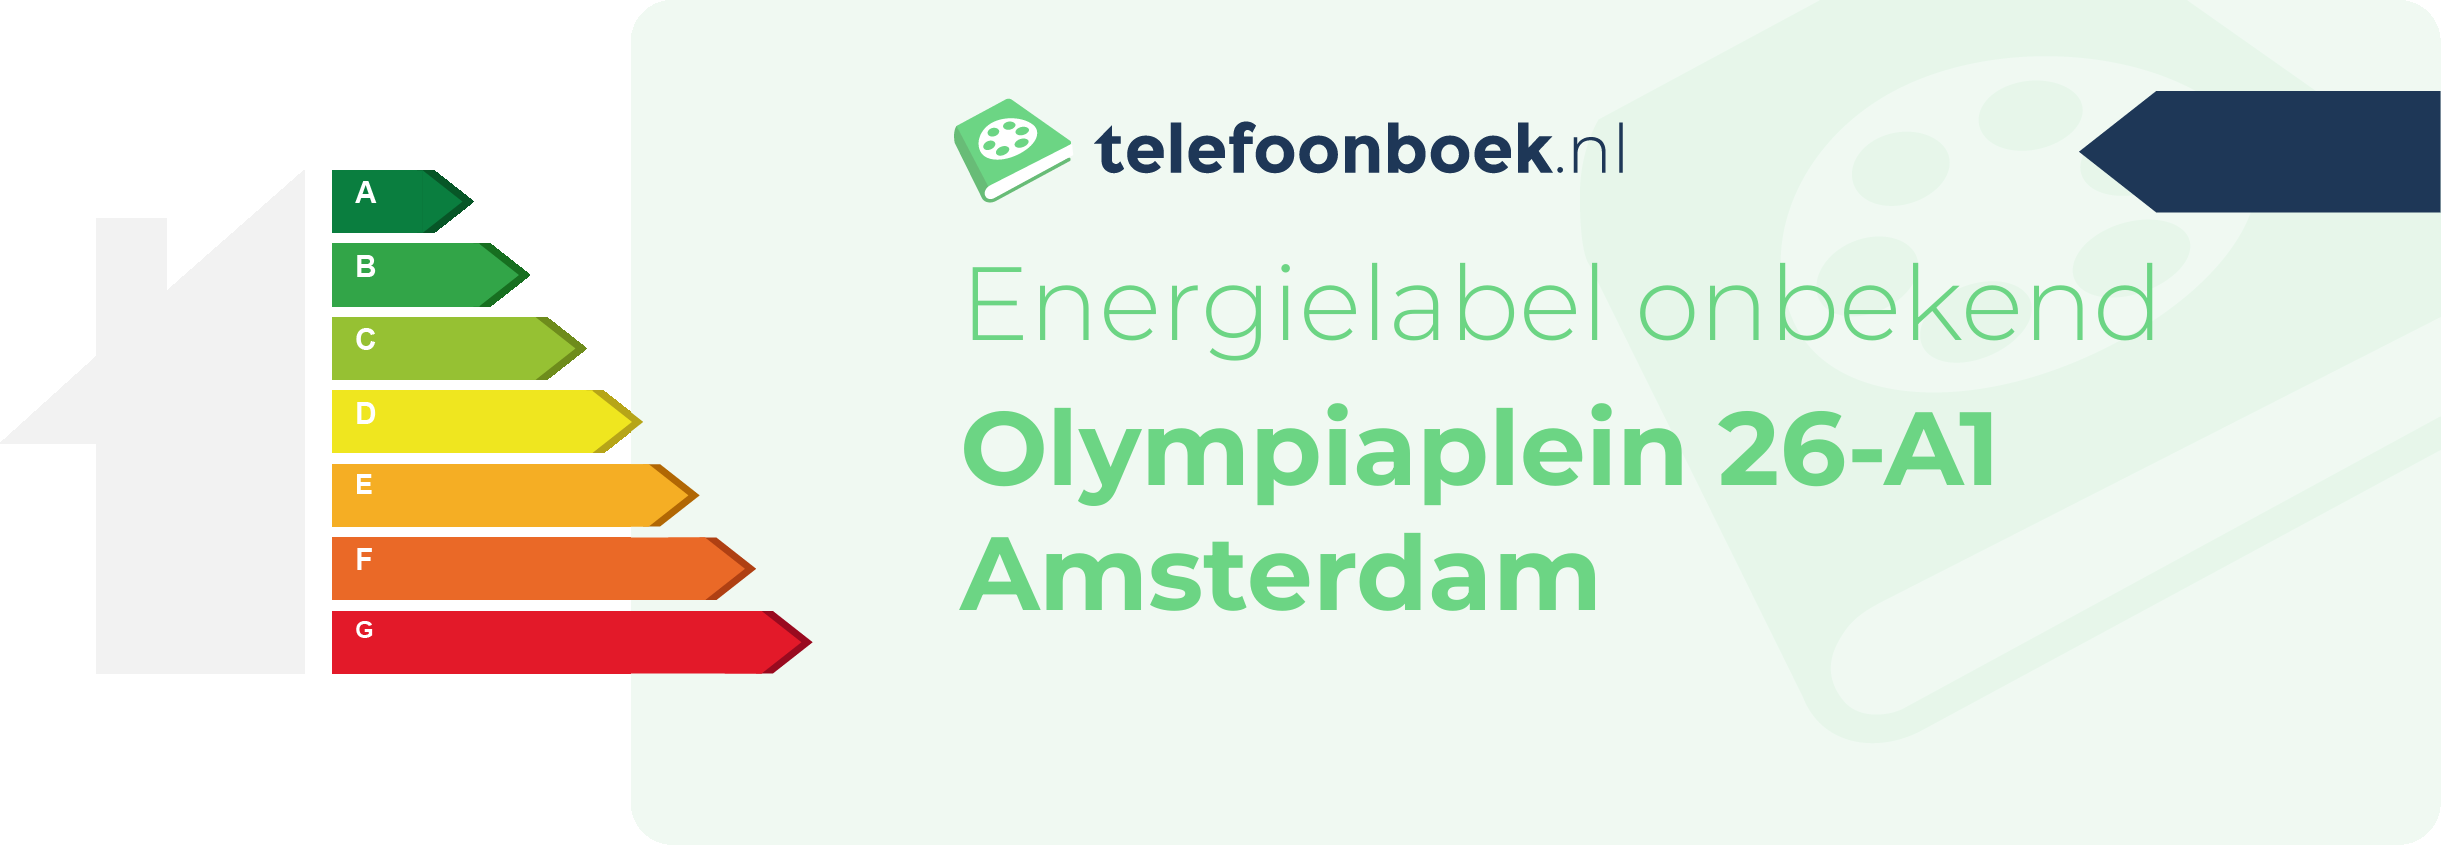 Energielabel Olympiaplein 26-A1 Amsterdam